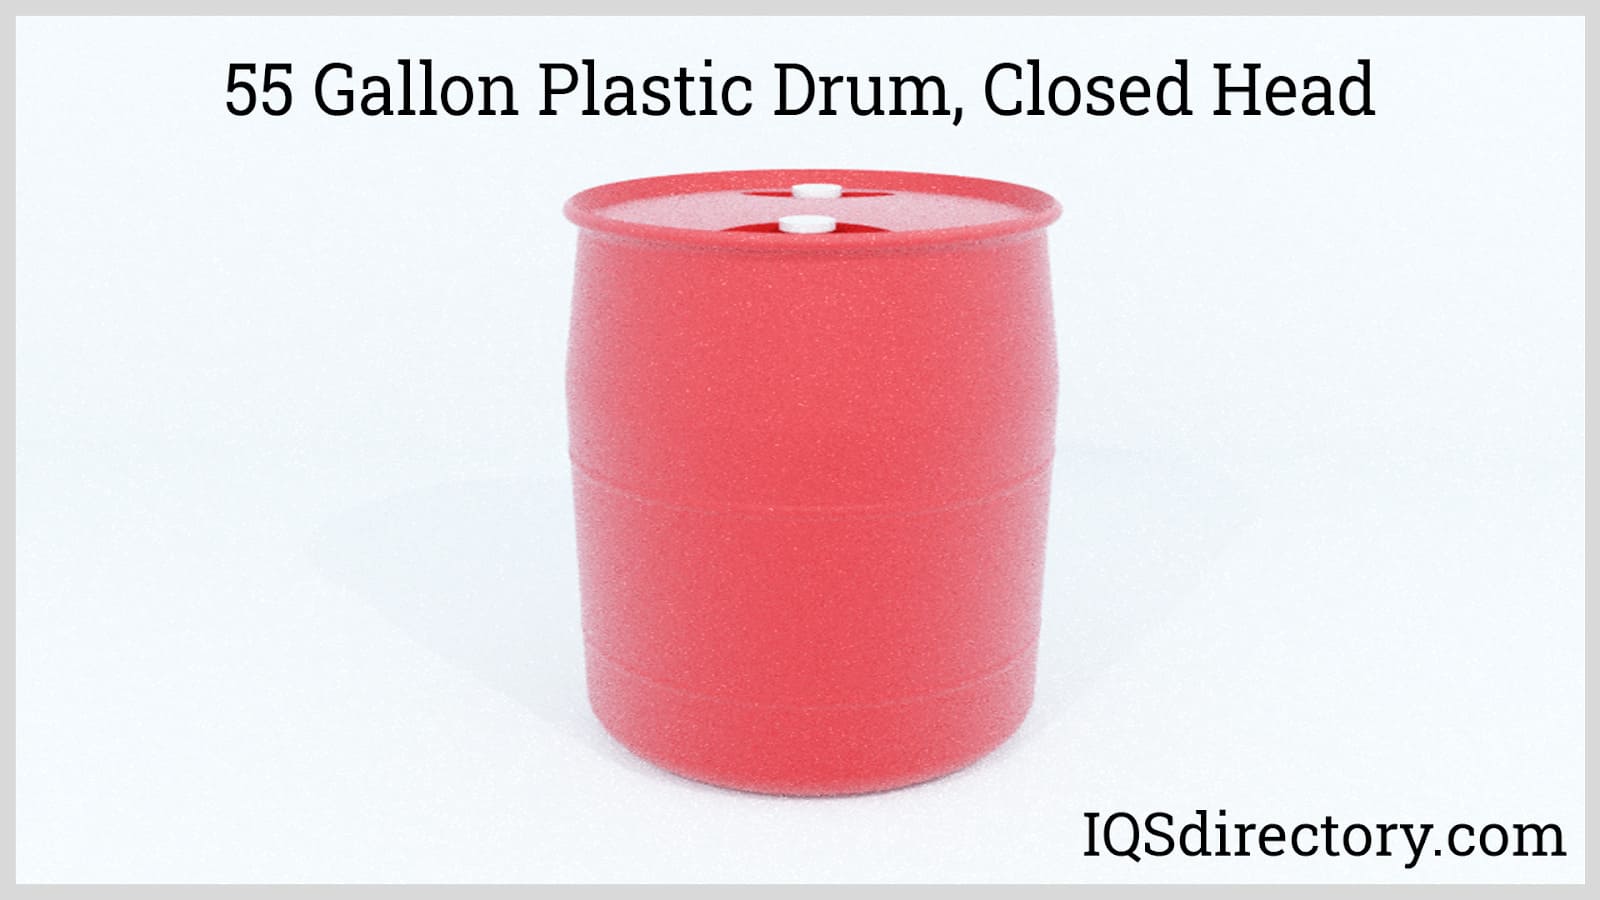 55 Gallon Plastic Drum, Closed Head